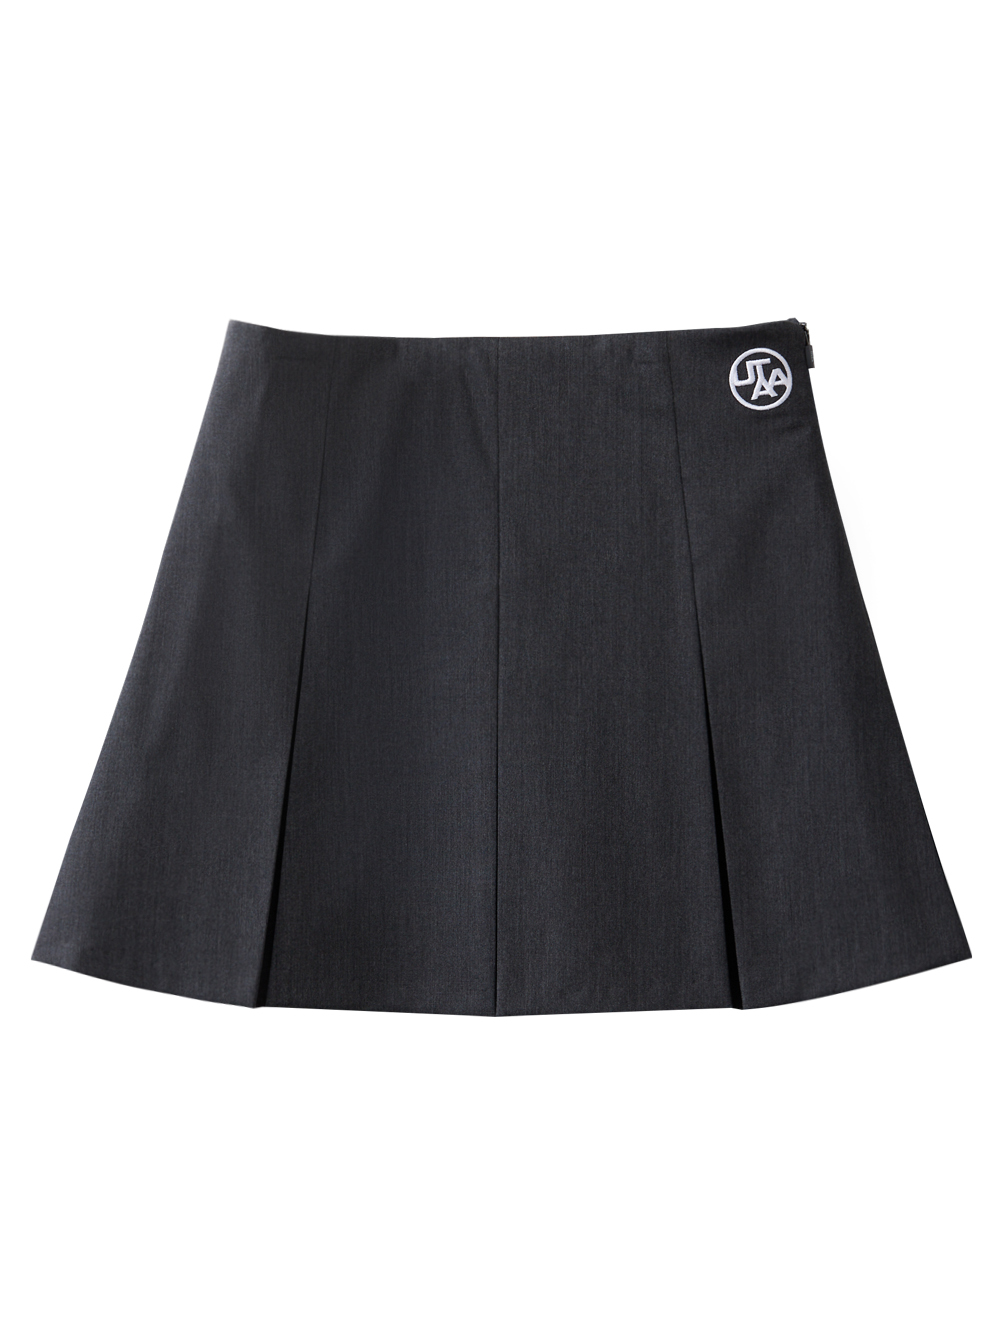 UTAA Standard Symbol Skirt : Women&#039;s C/grey  (UC2SKF570CG)